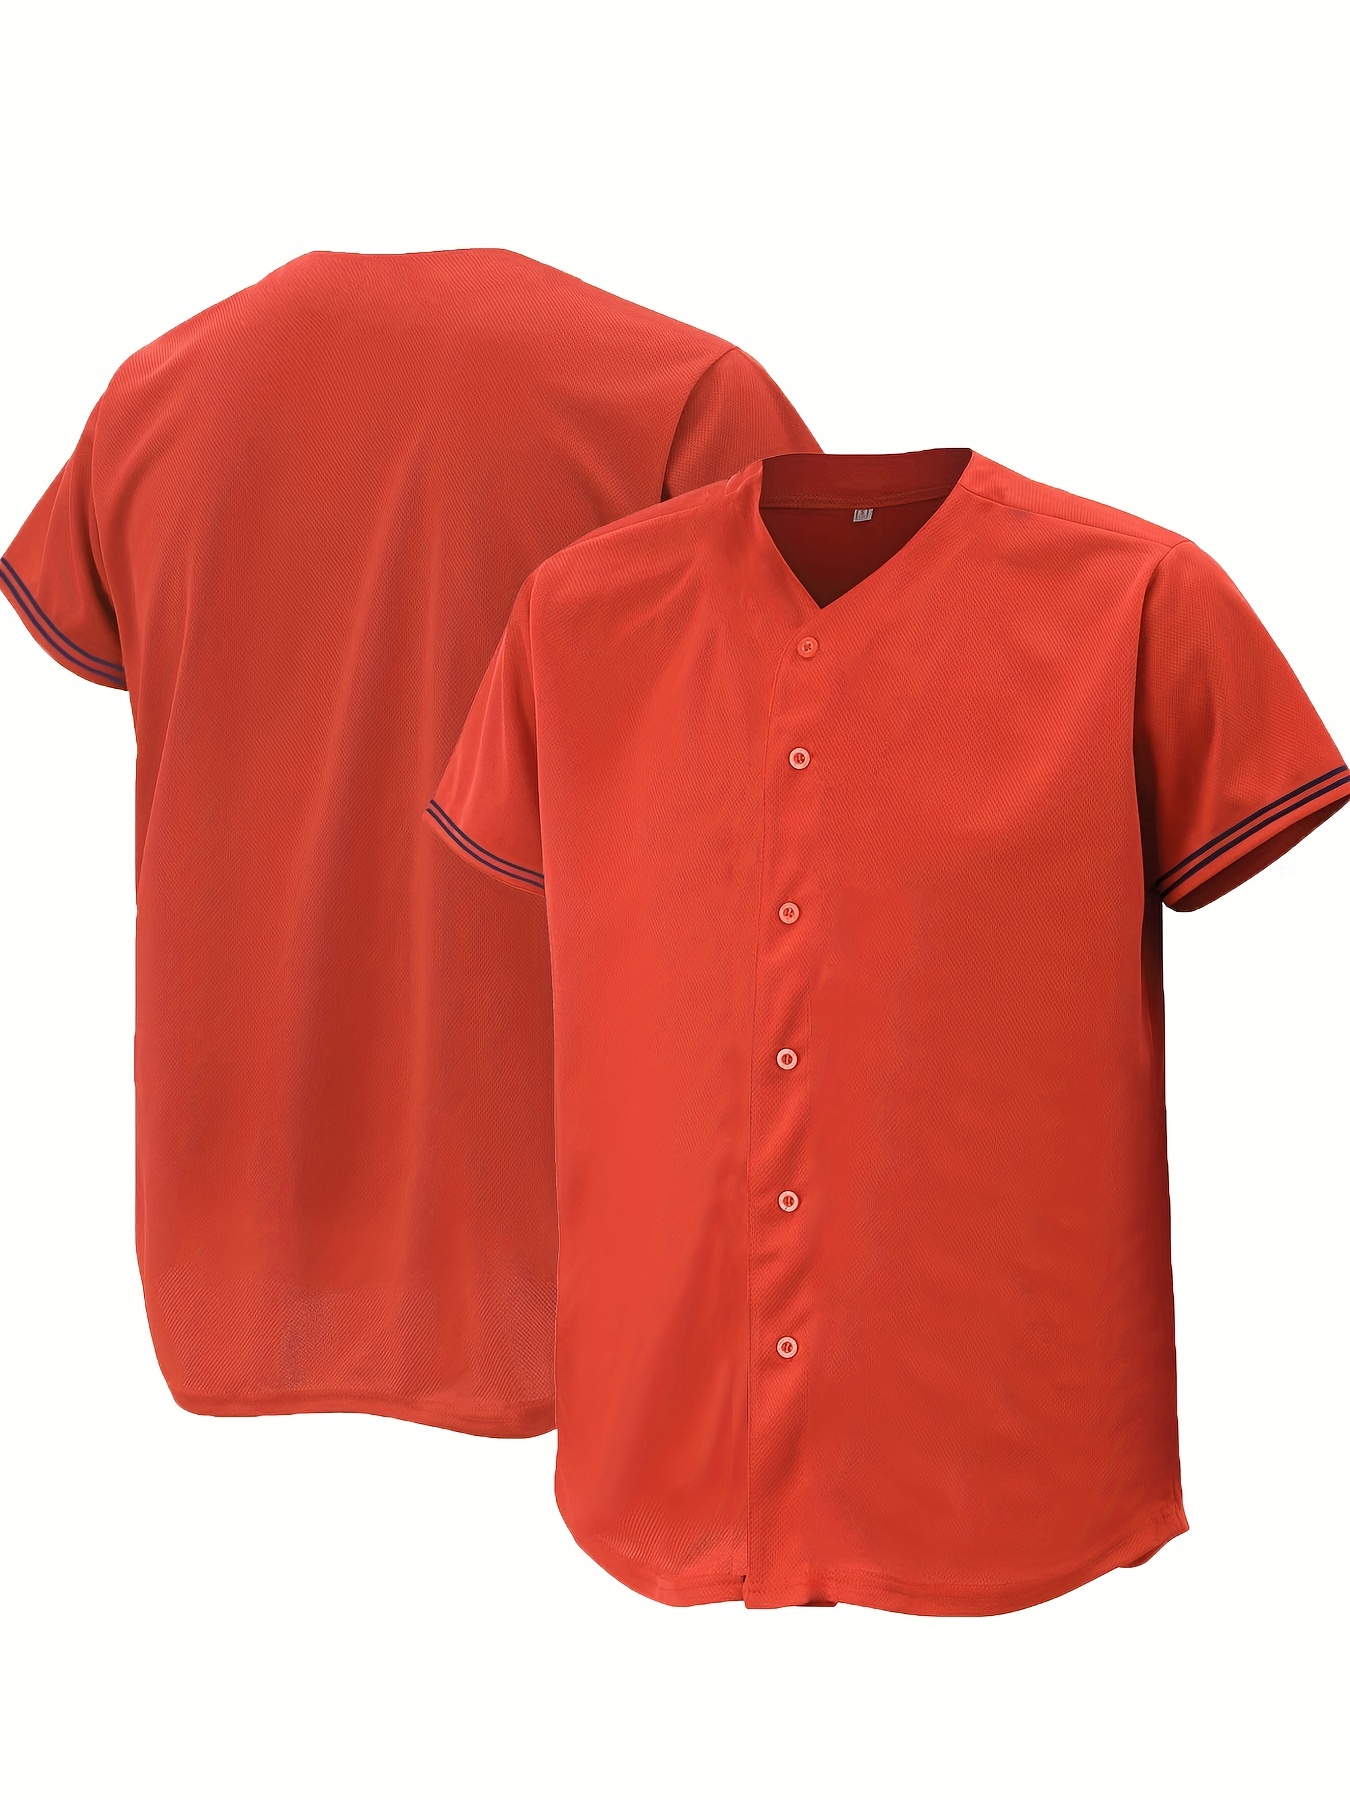 Blank Baseball Jersey,short Sleeve Plain Jersey Shirt,sports Uniform For  Men Women - Temu